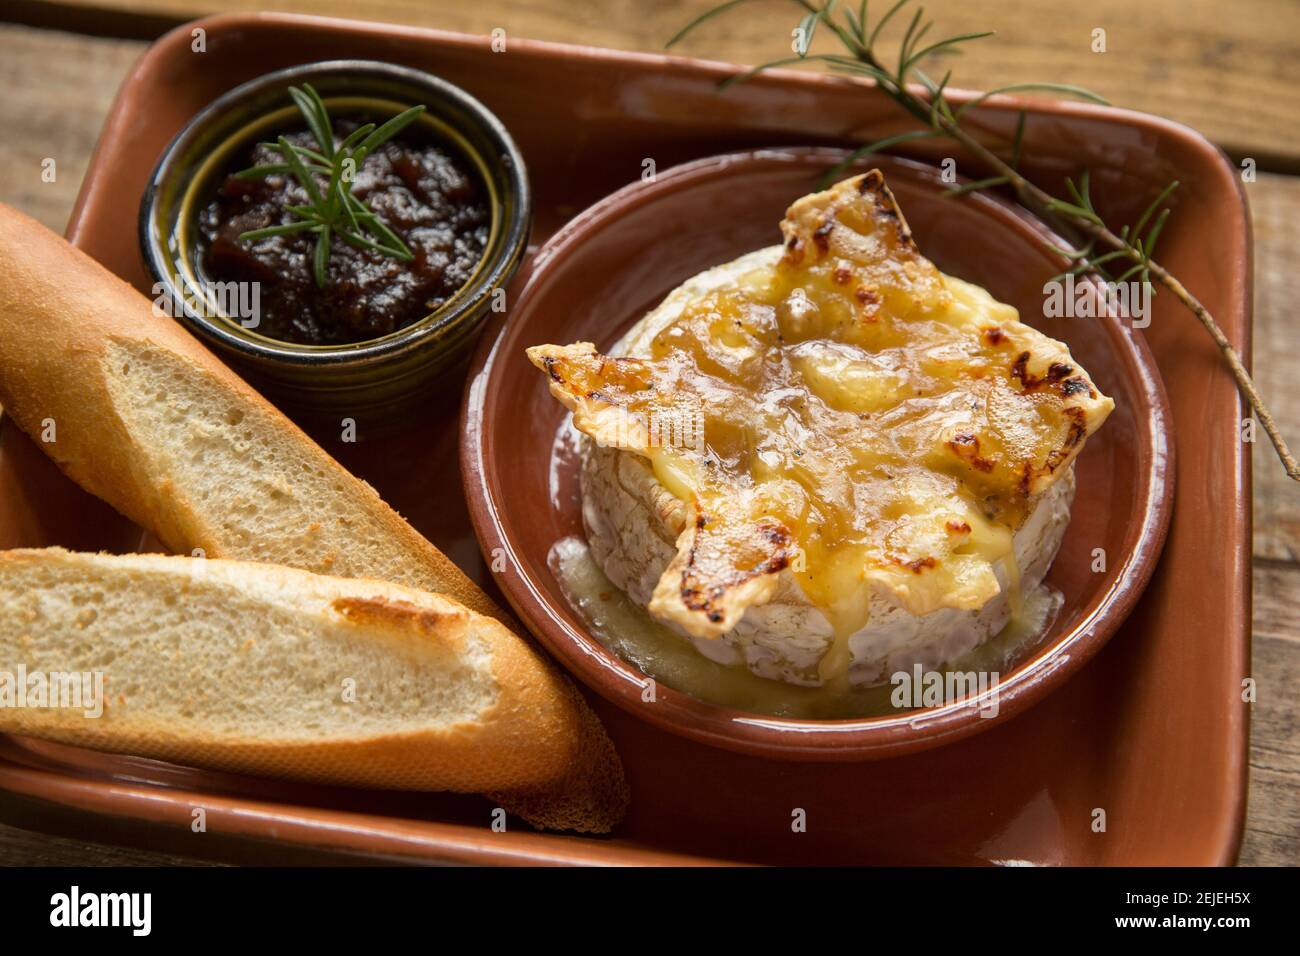 Camembert français qui a été cuit au four avec une sauce à la truffe, à l'ail et au miel, servi avec du pain français grillé et un chutney d'oignon caramélisé Banque D'Images